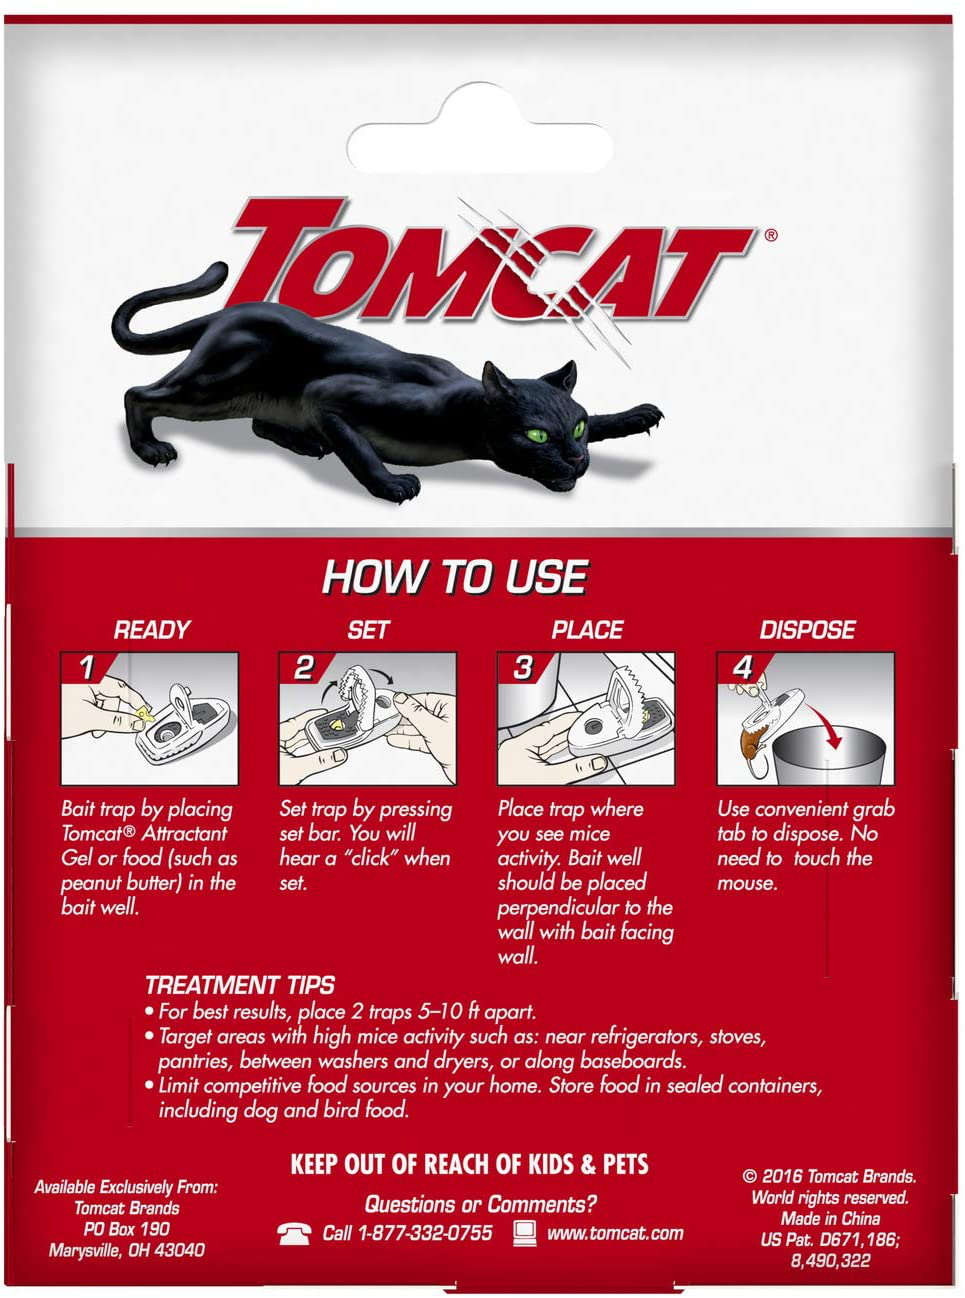 Tomcat Press 'N Set Mouse Trap, 2 Traps